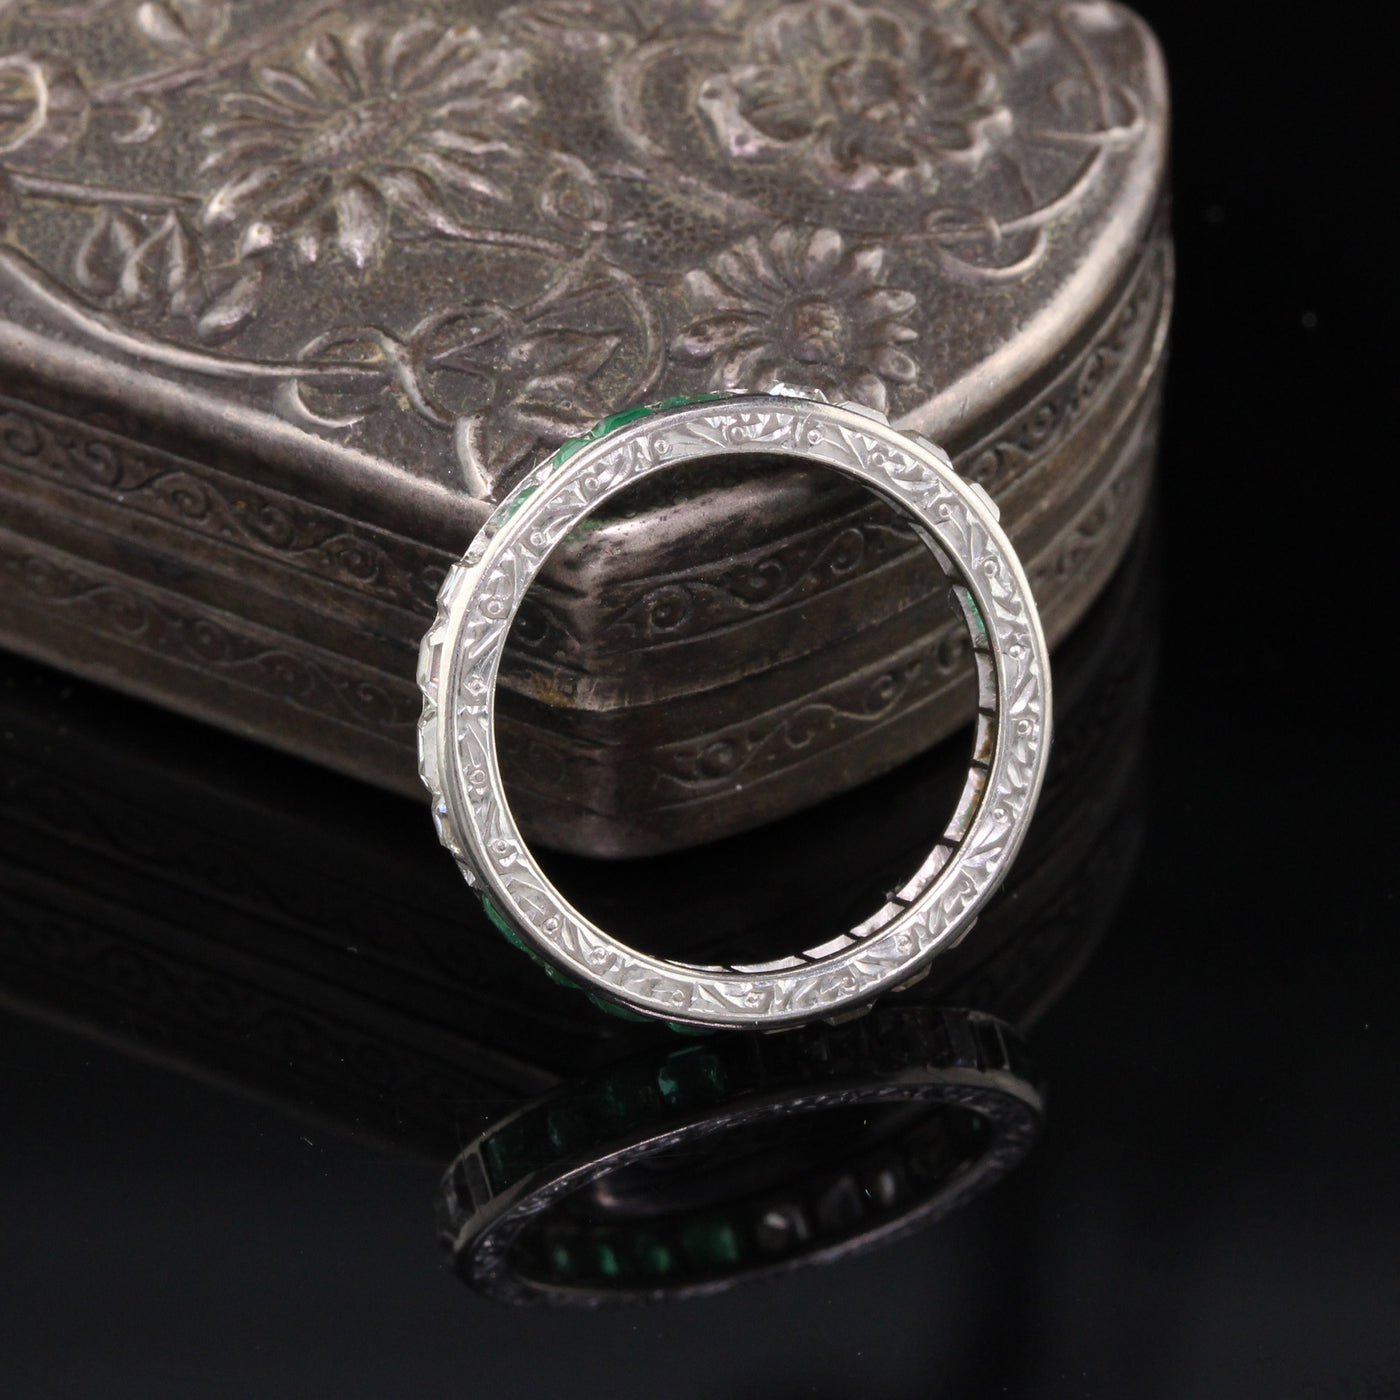 Art Deco Platinum Asscher Cut Diamond  Emerald Wedding Band - Size 7.5